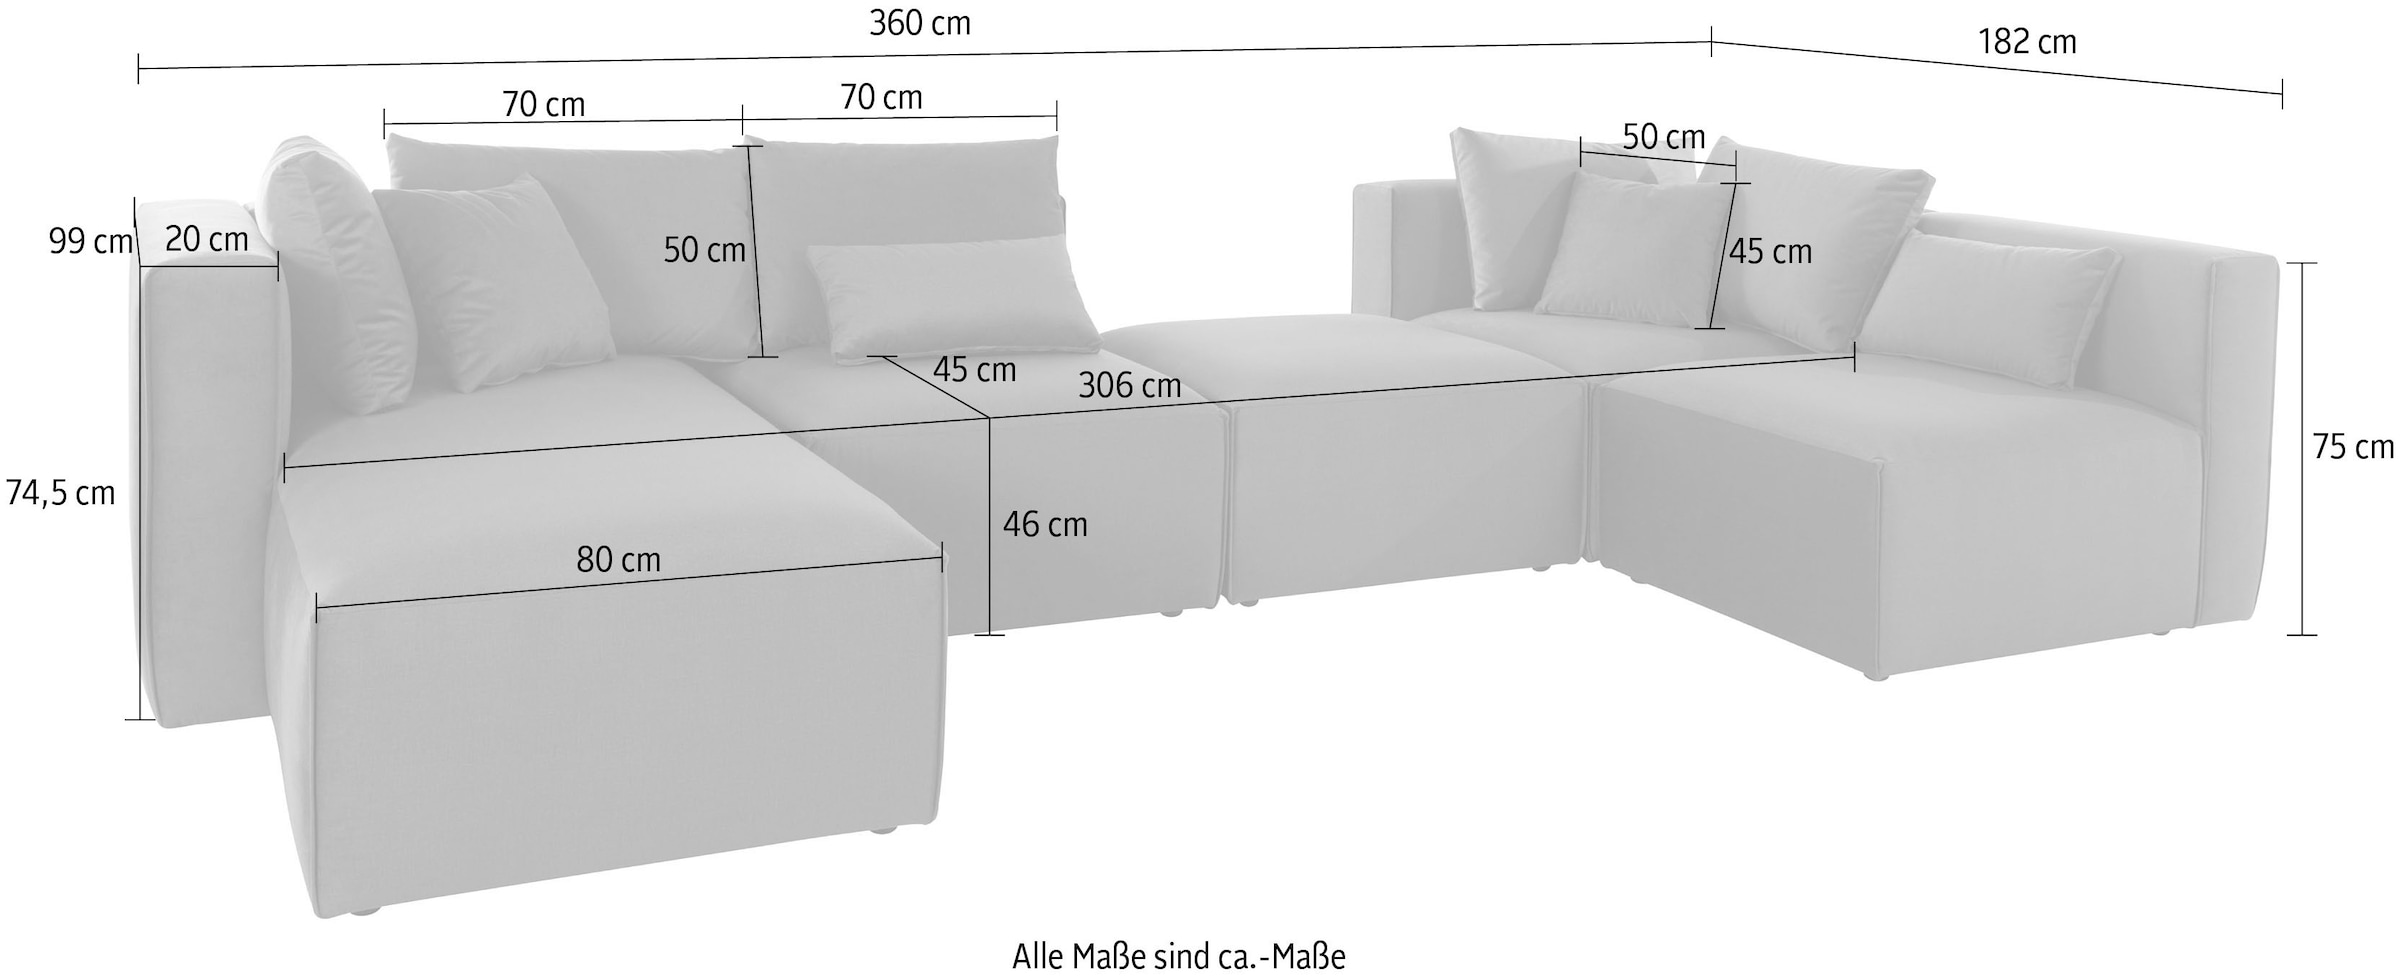 Guido Maria Kretschmer Home&Living Wohnlandschaft »Comfine U-Form«, zusammengesetzt aus Modulen, in 3 Stoffen und vielen Farben